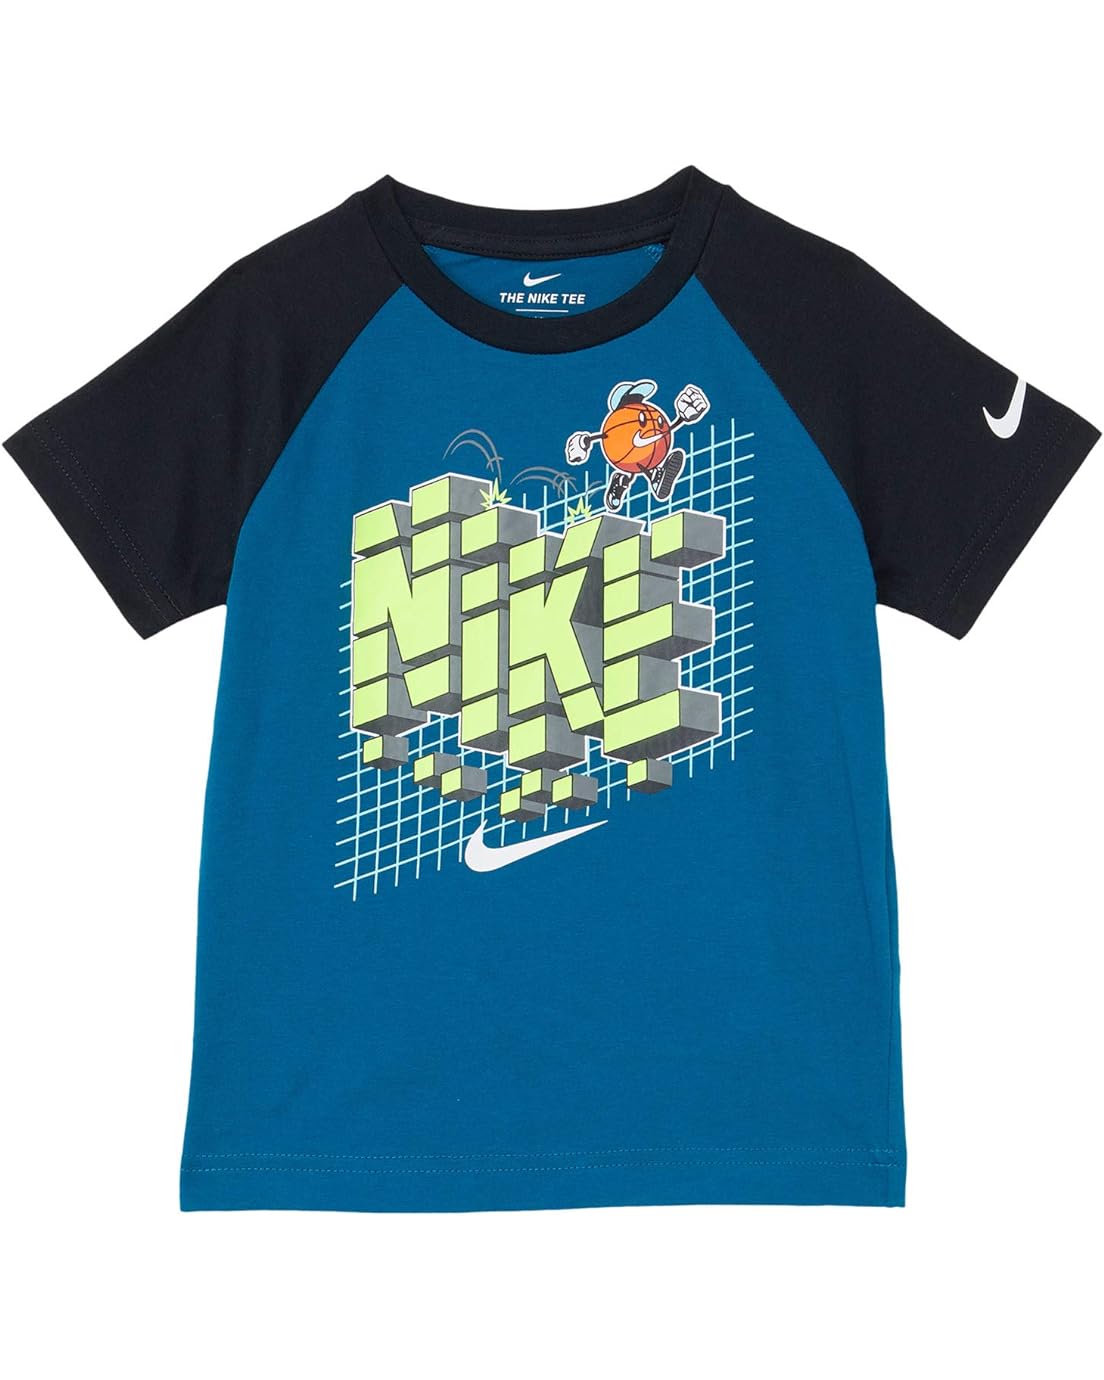 Nike Kids Basketball Raglan Graphic T-Shirt (Toddler)